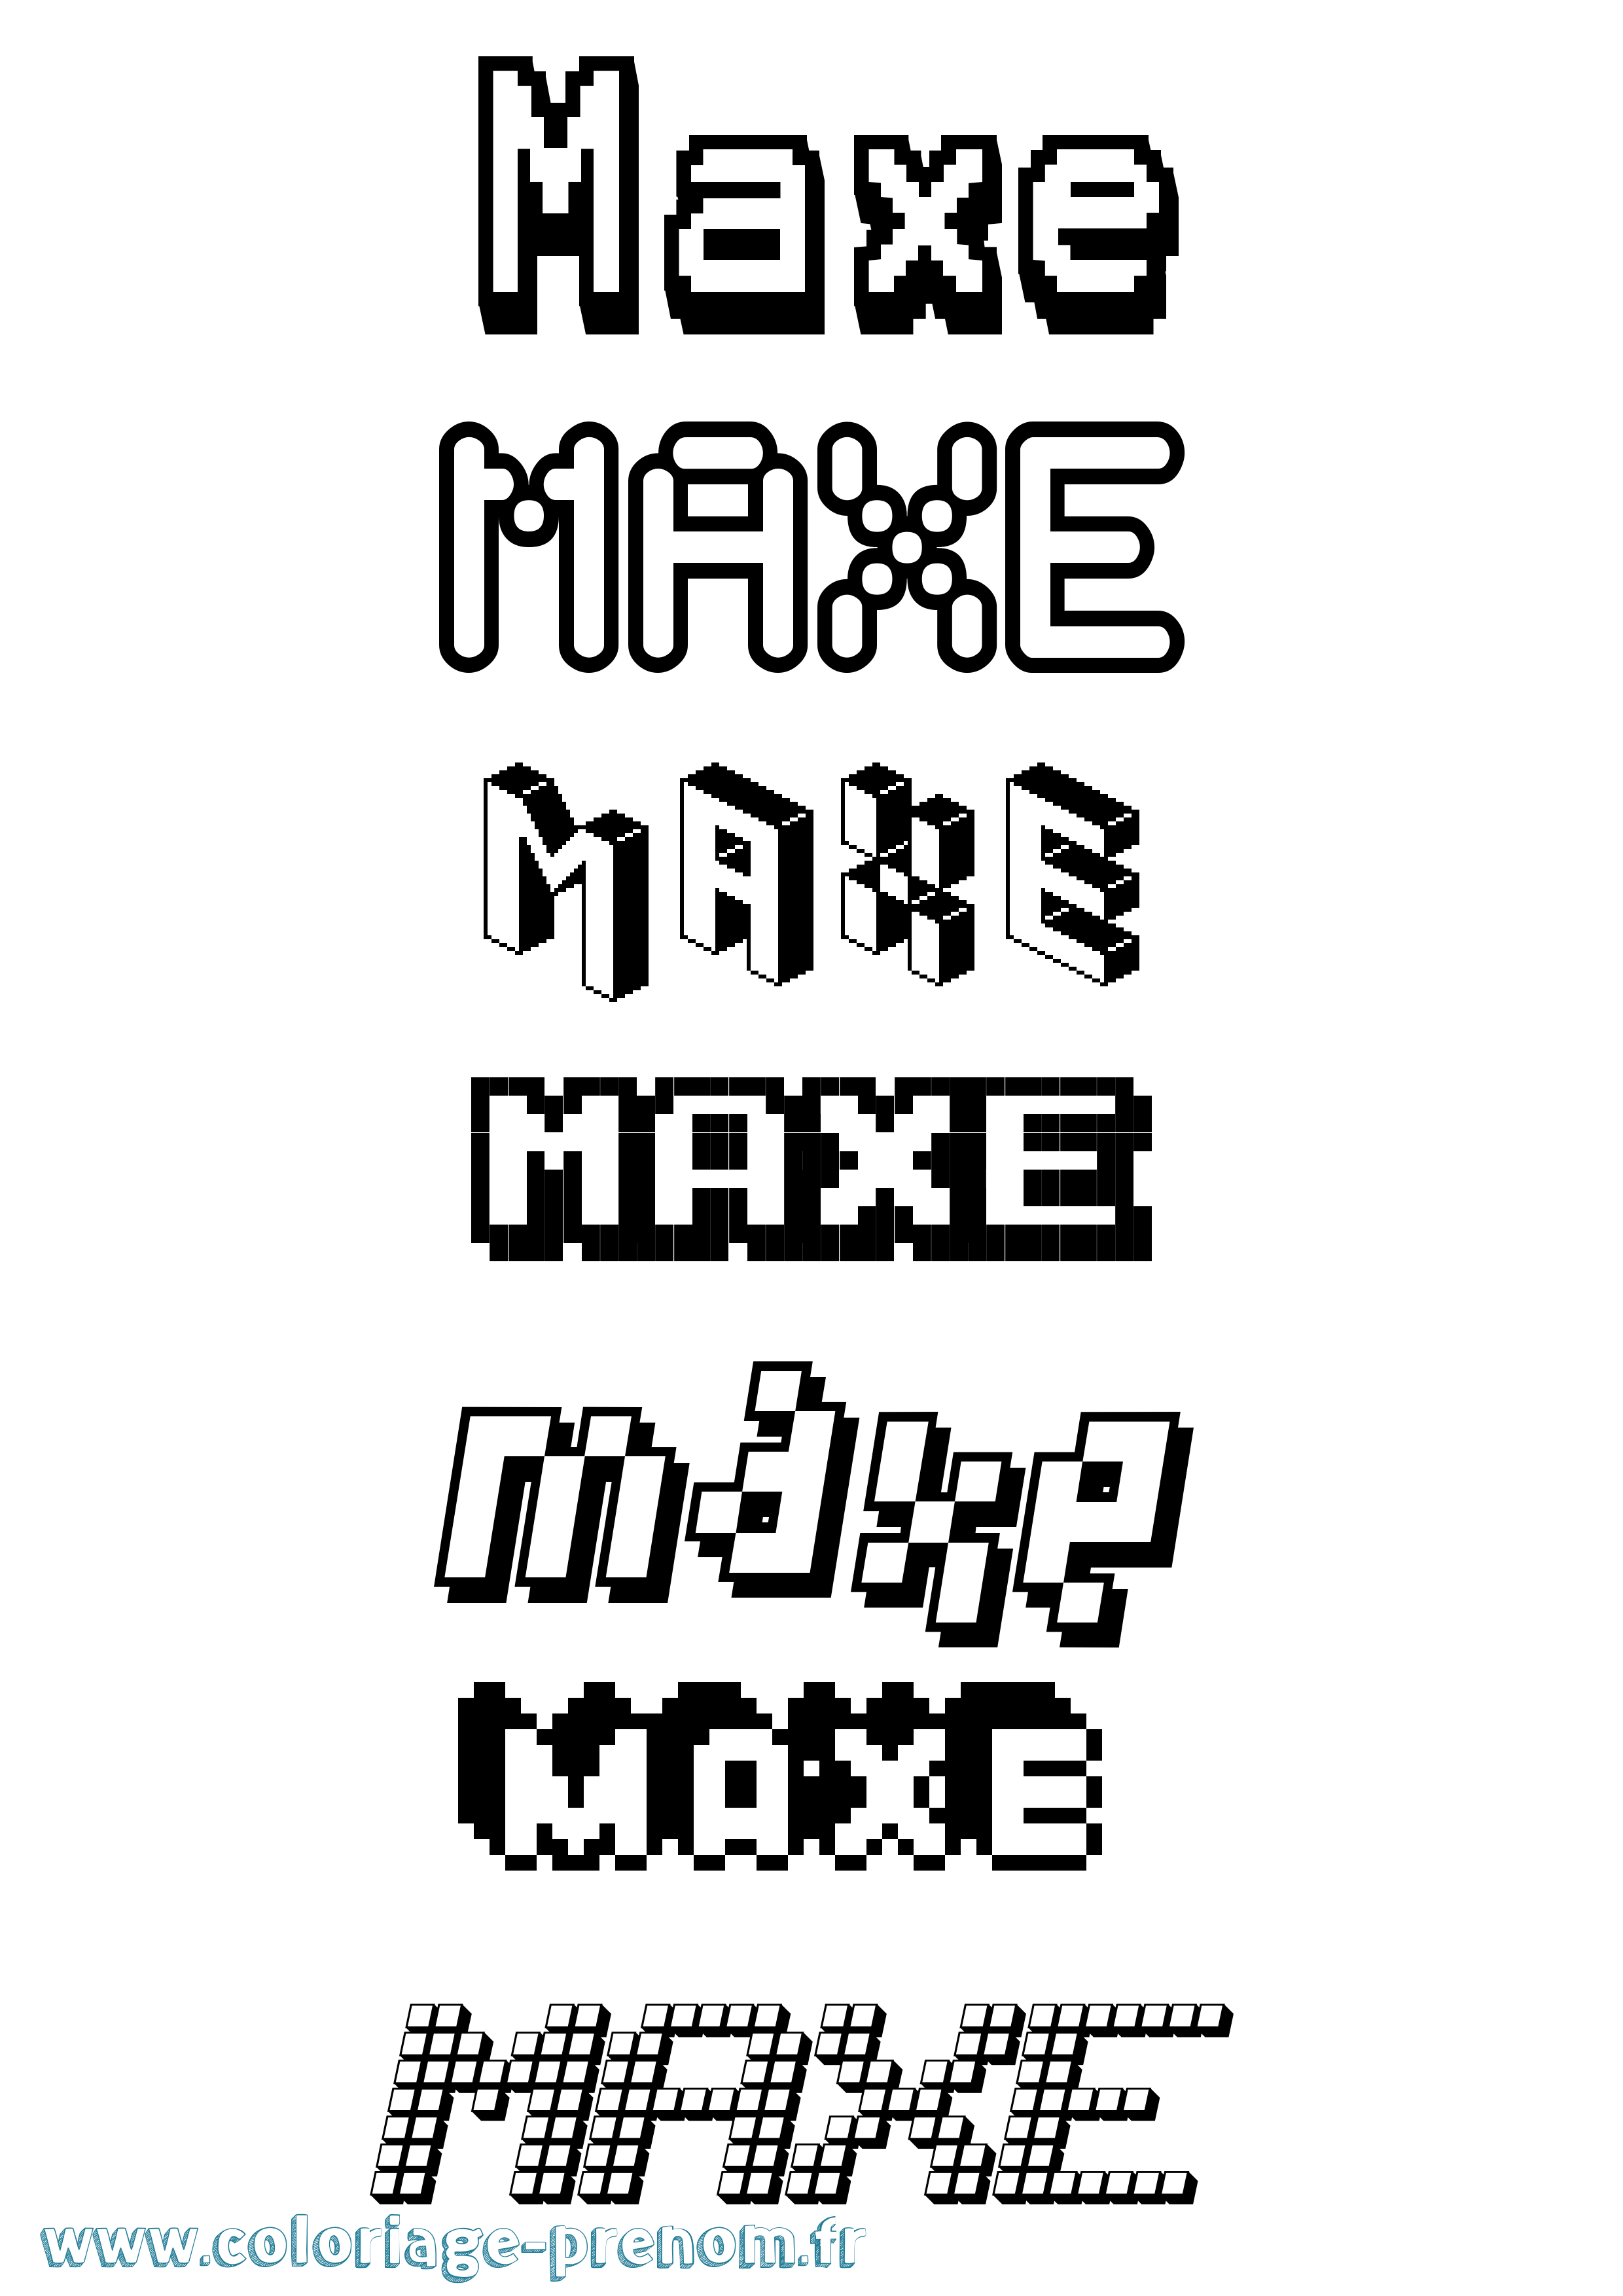 Coloriage prénom Maxe Pixel